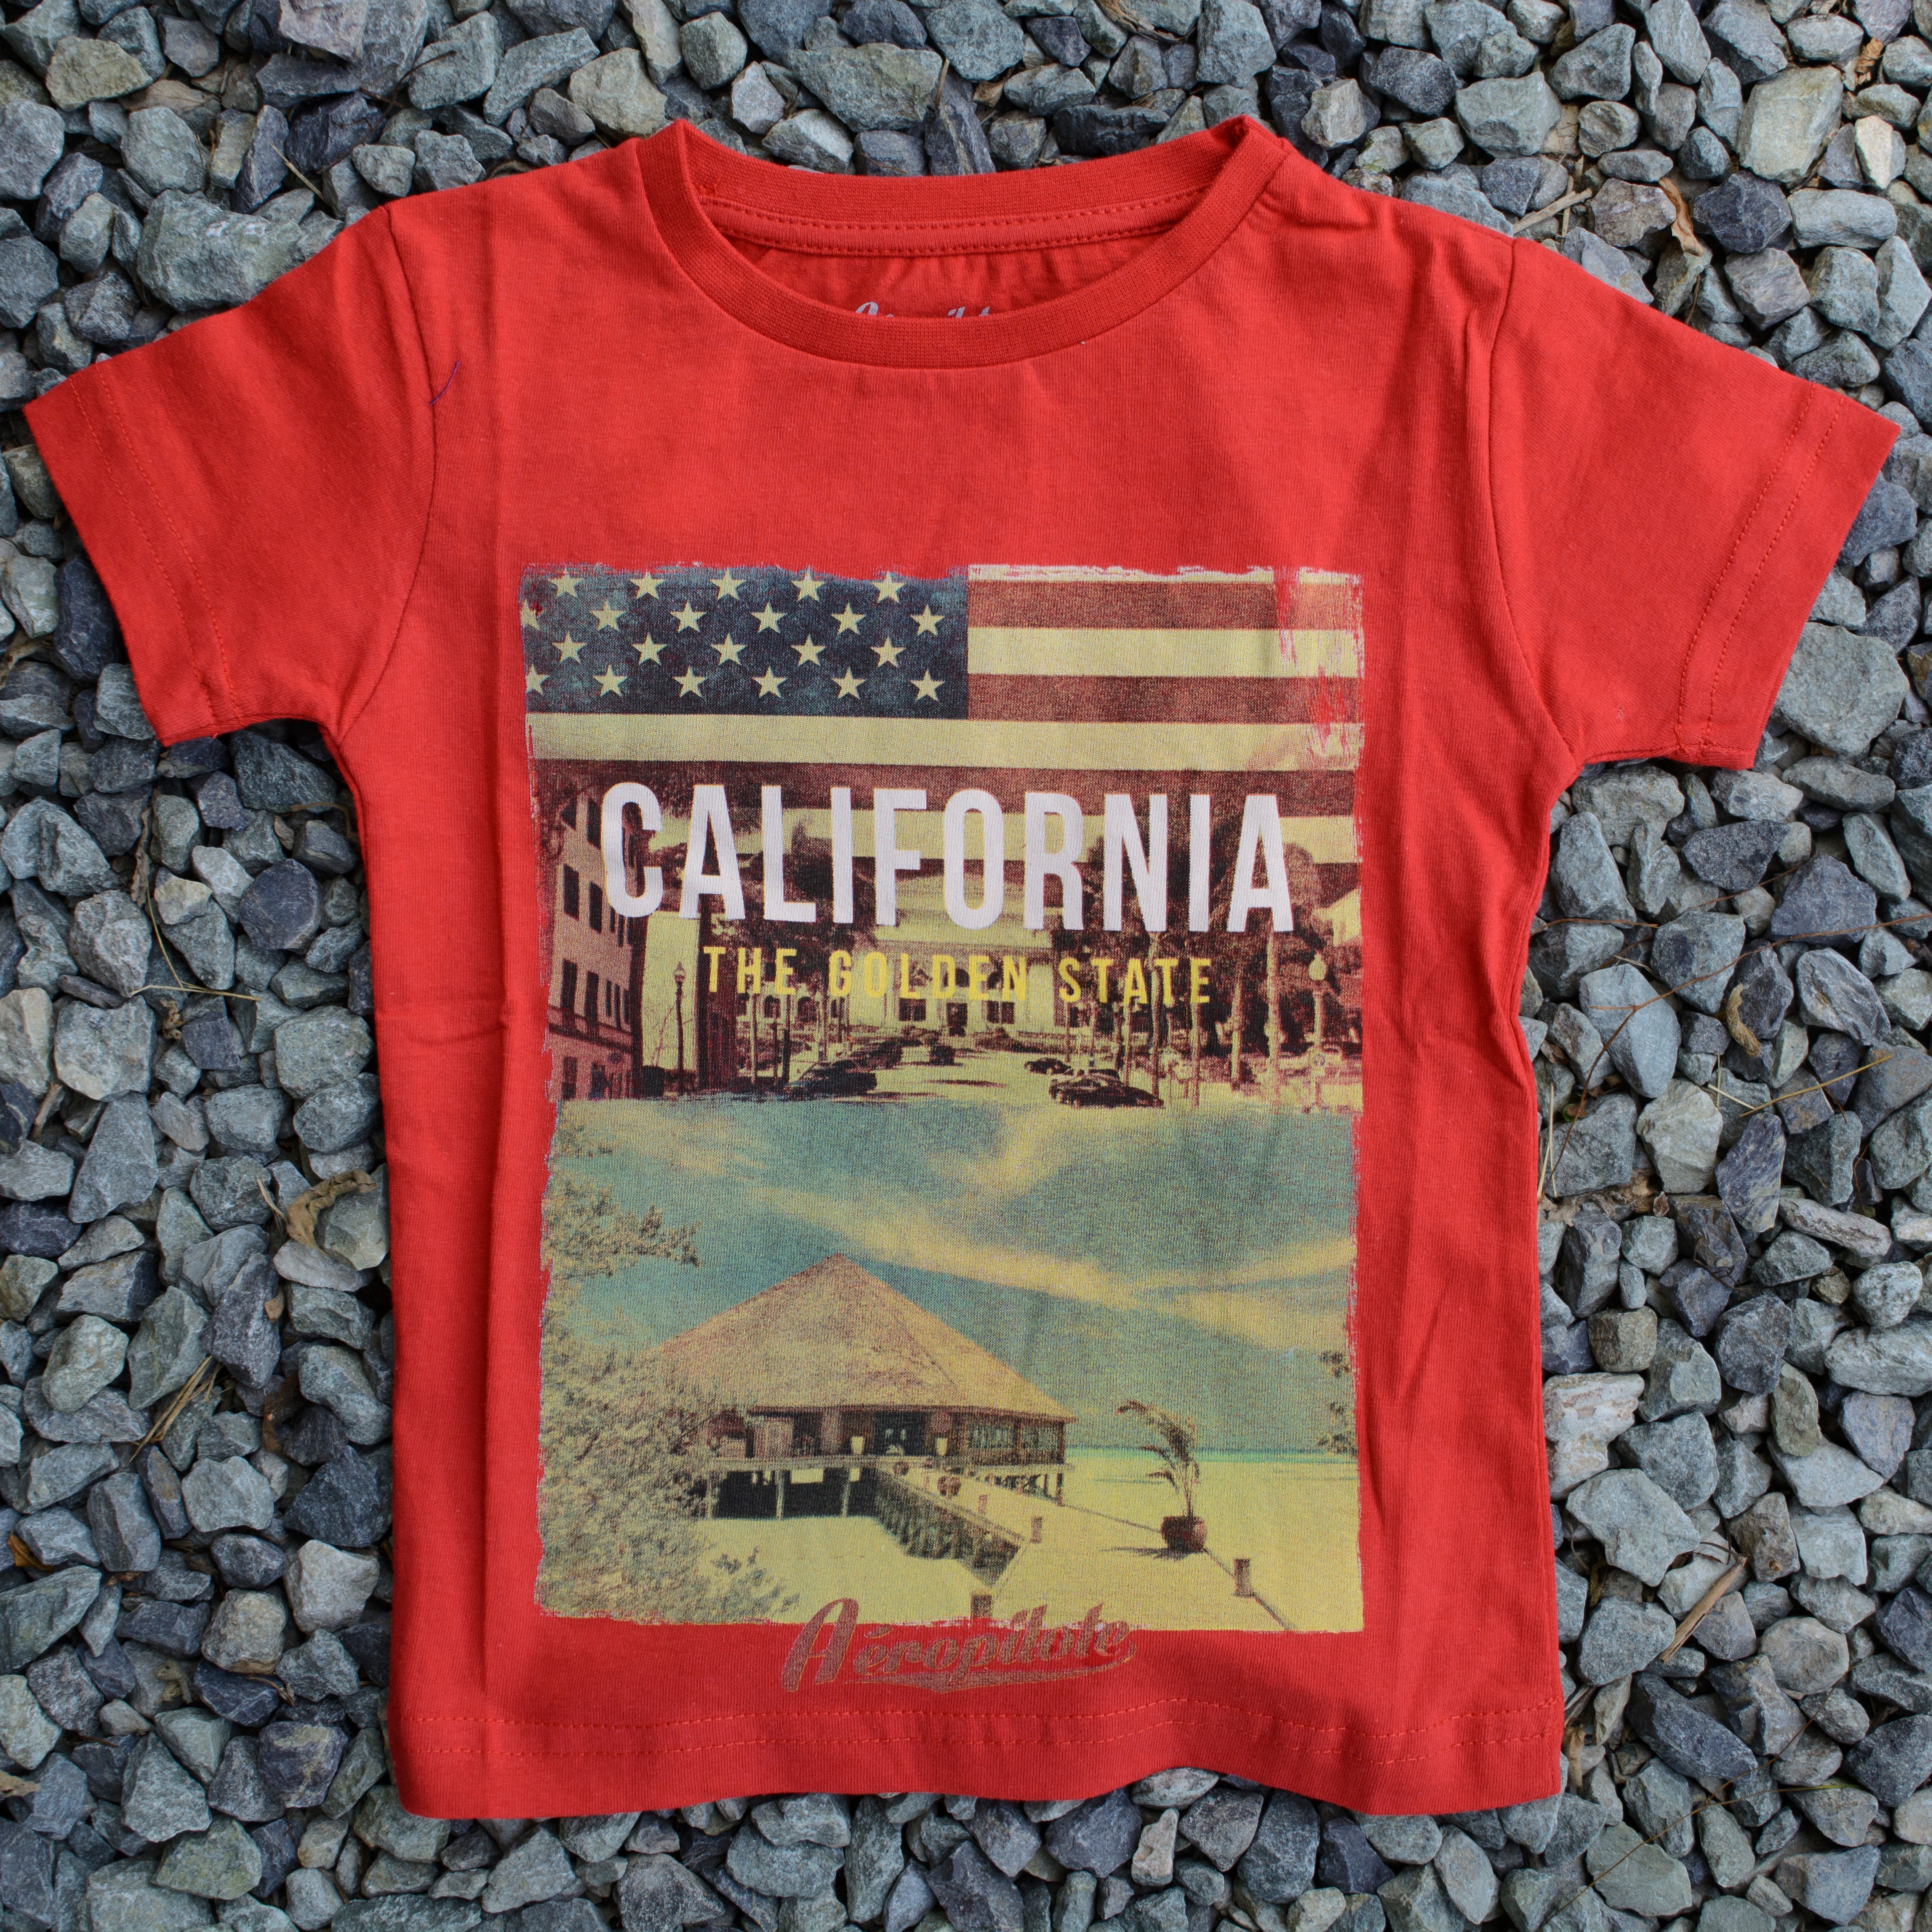 California - Tees for Kids - Red & White T-Shirt - Gift for Children - Wear Sierra